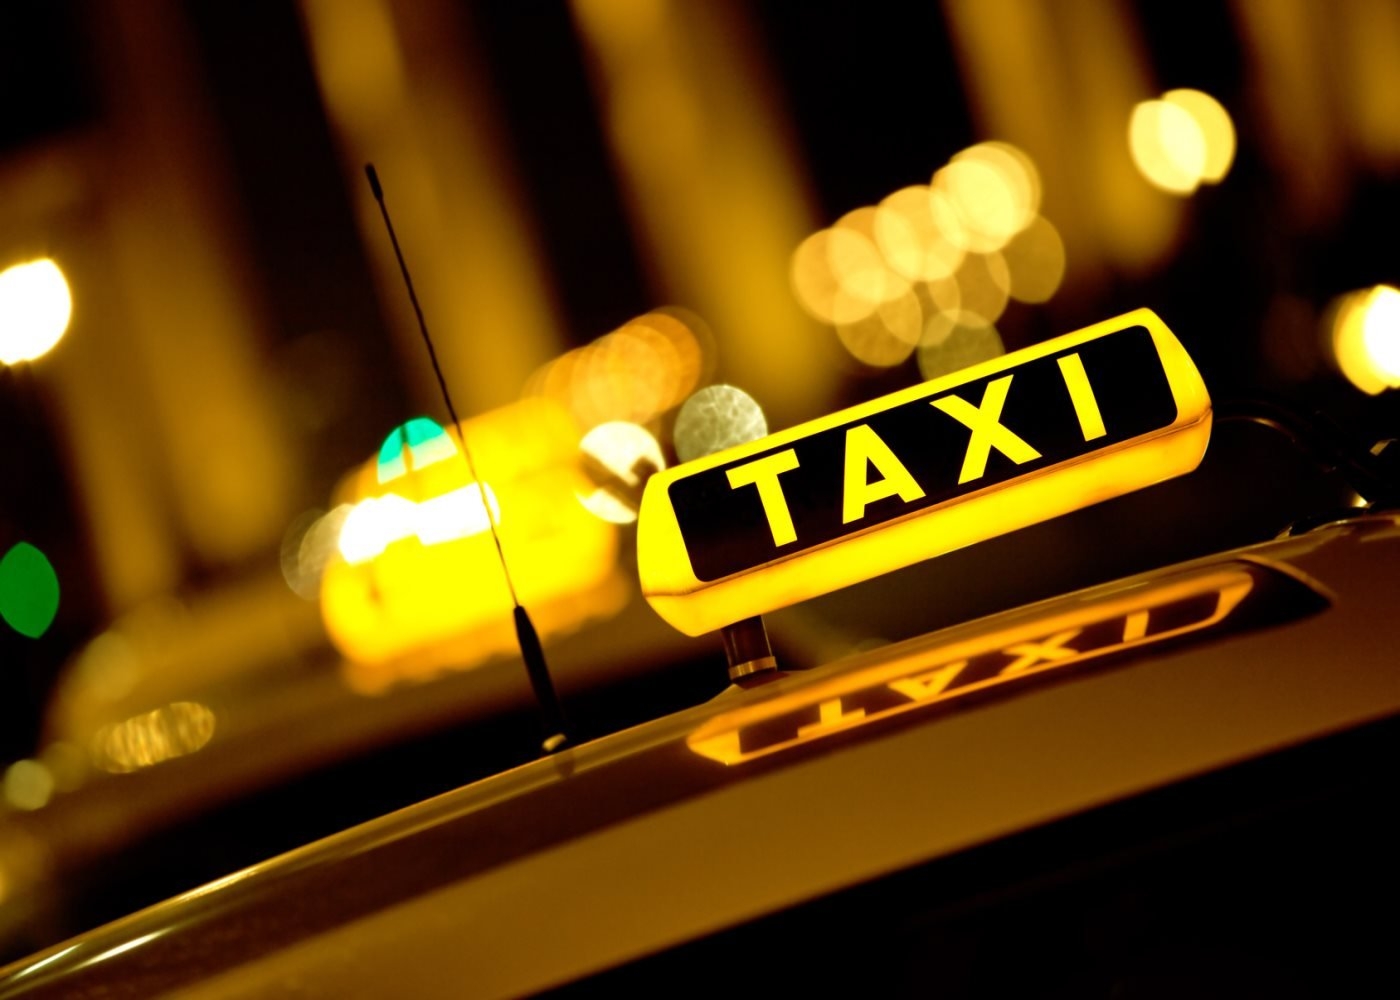 В Брянске таксист обманул пассажирок на 60 тыс рублей